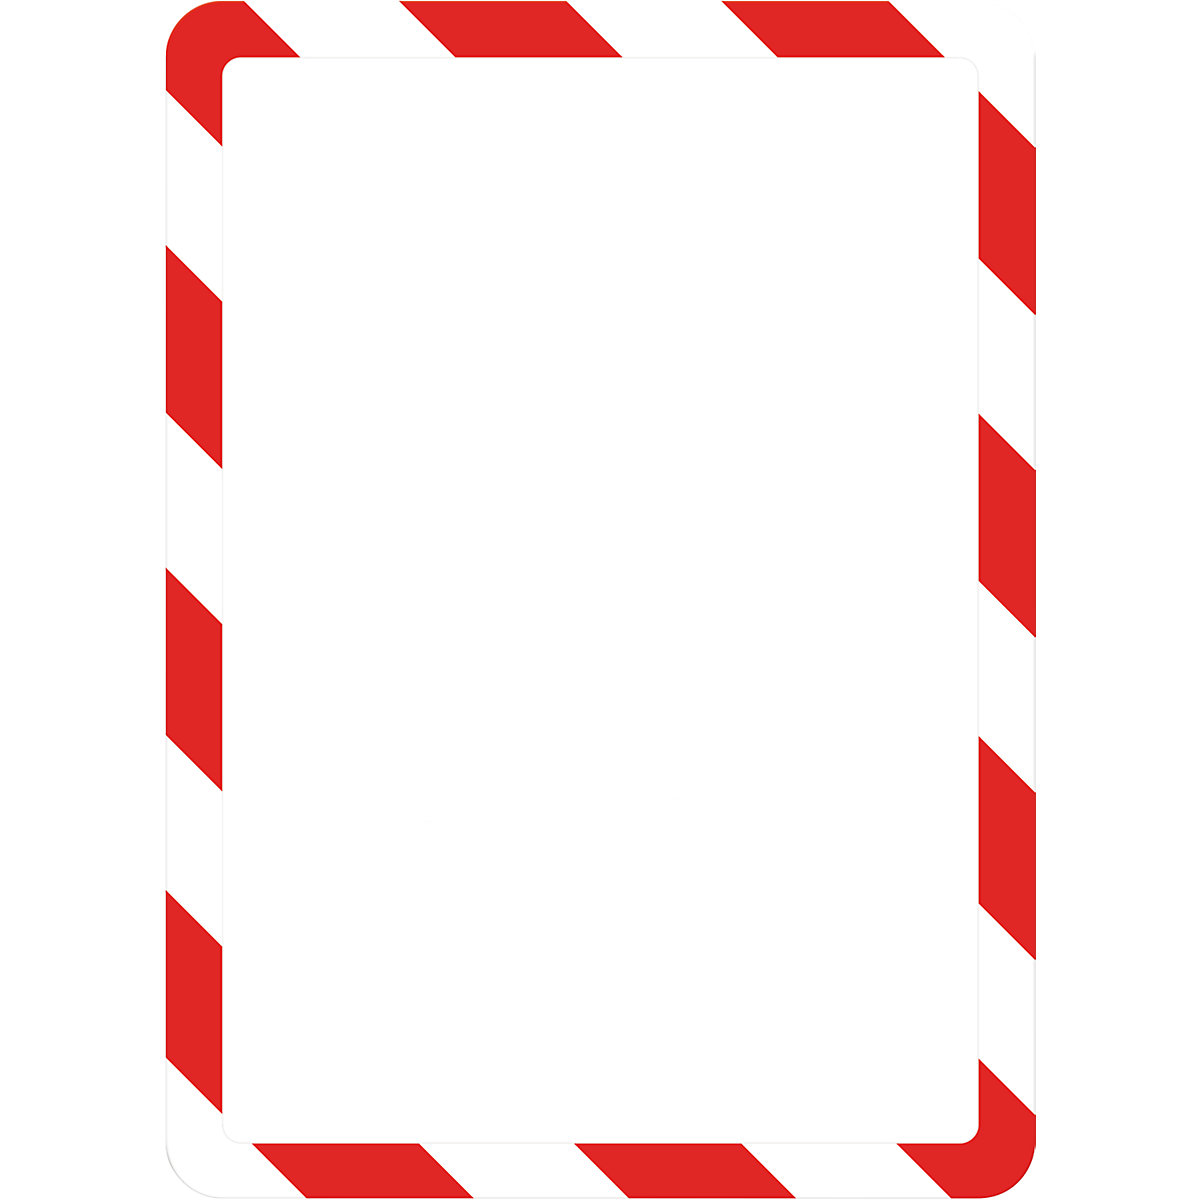 Bolsa transparente de apresentação A4 – Tarifold, com fecho magnético, vermelha / branca, embalagem de 2 unid.-6